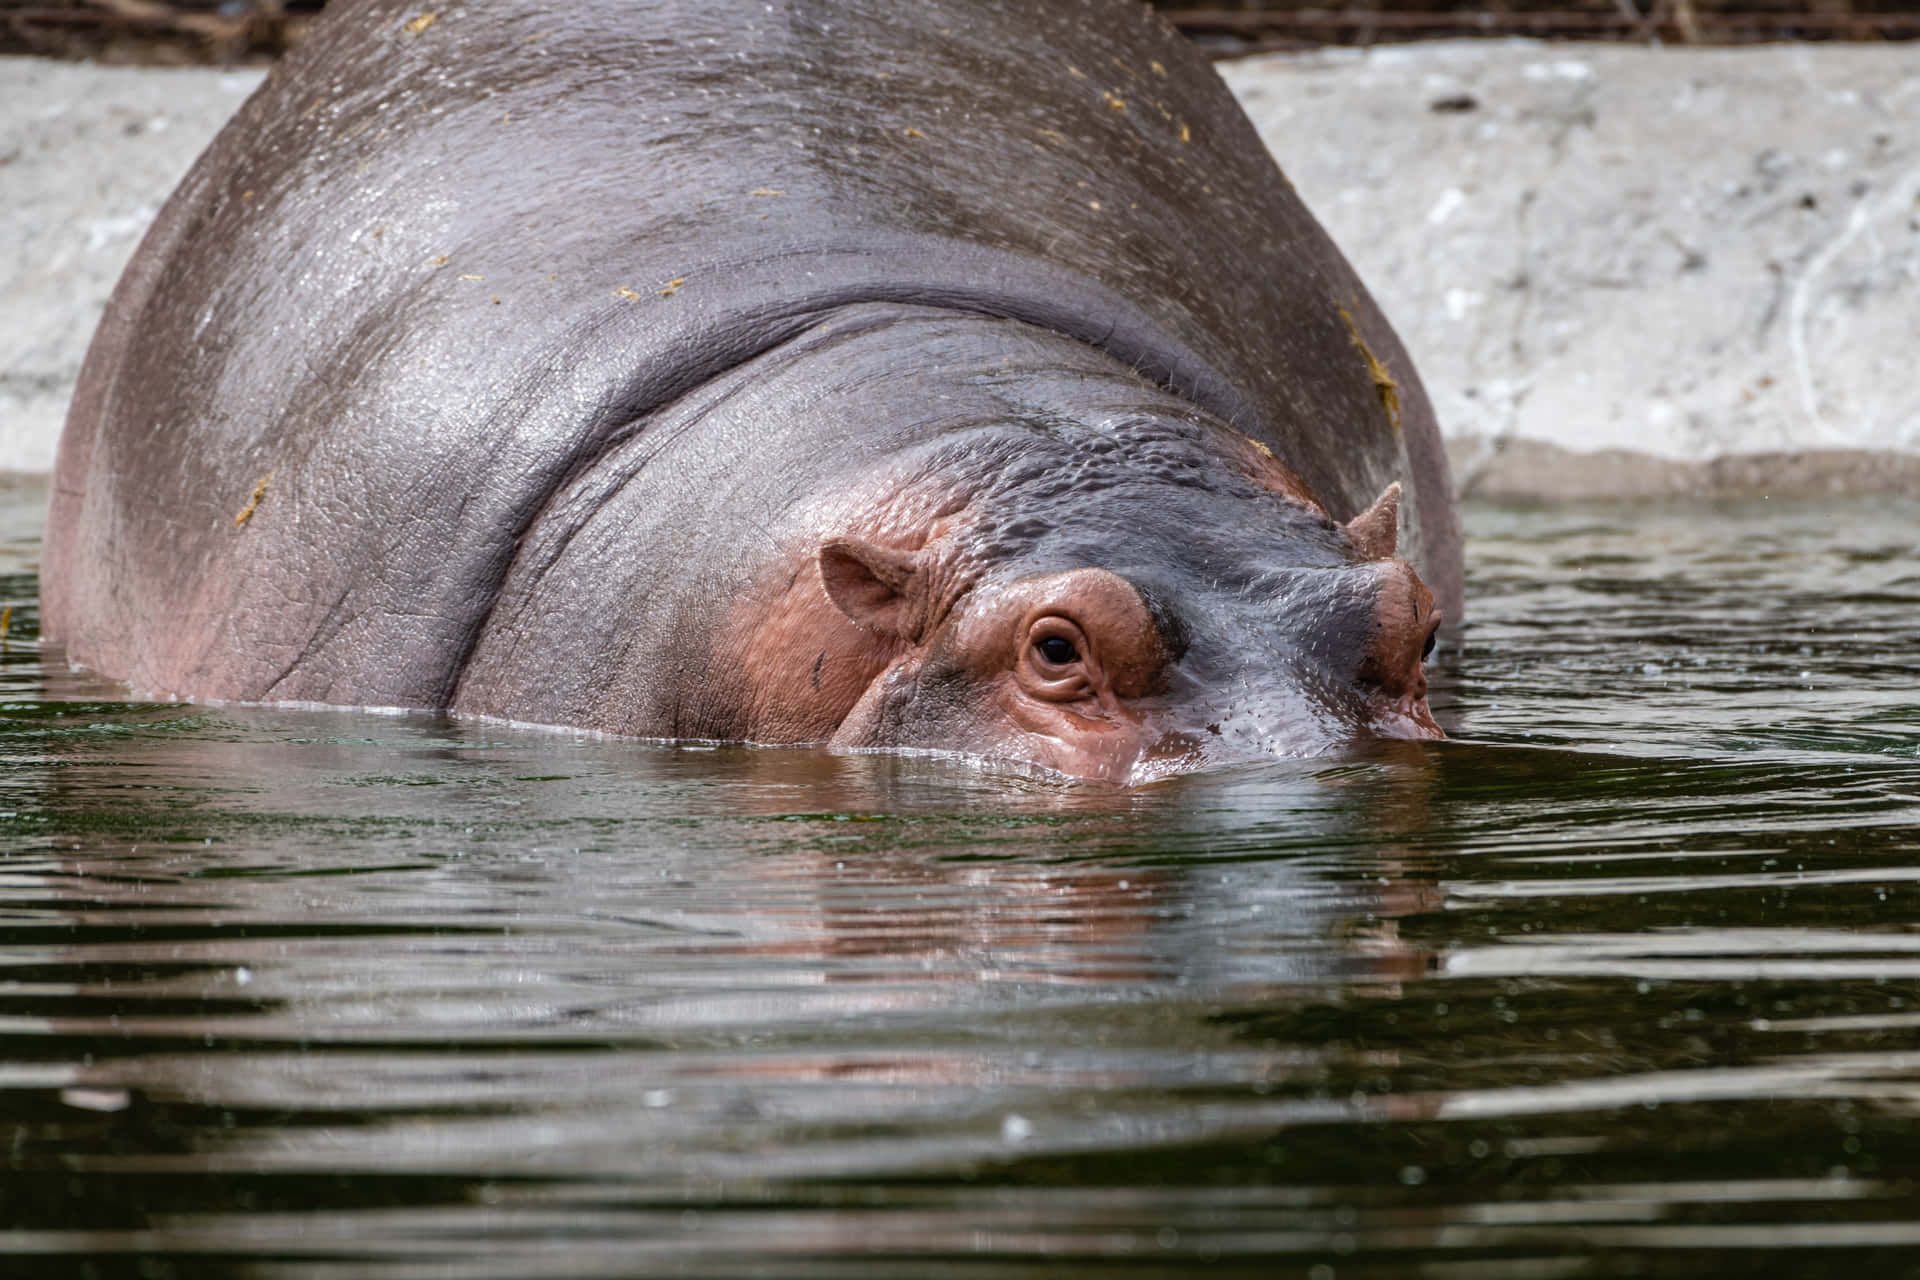 Imagende Un Hipopótamo Bañándose En Un Refrescante Río.